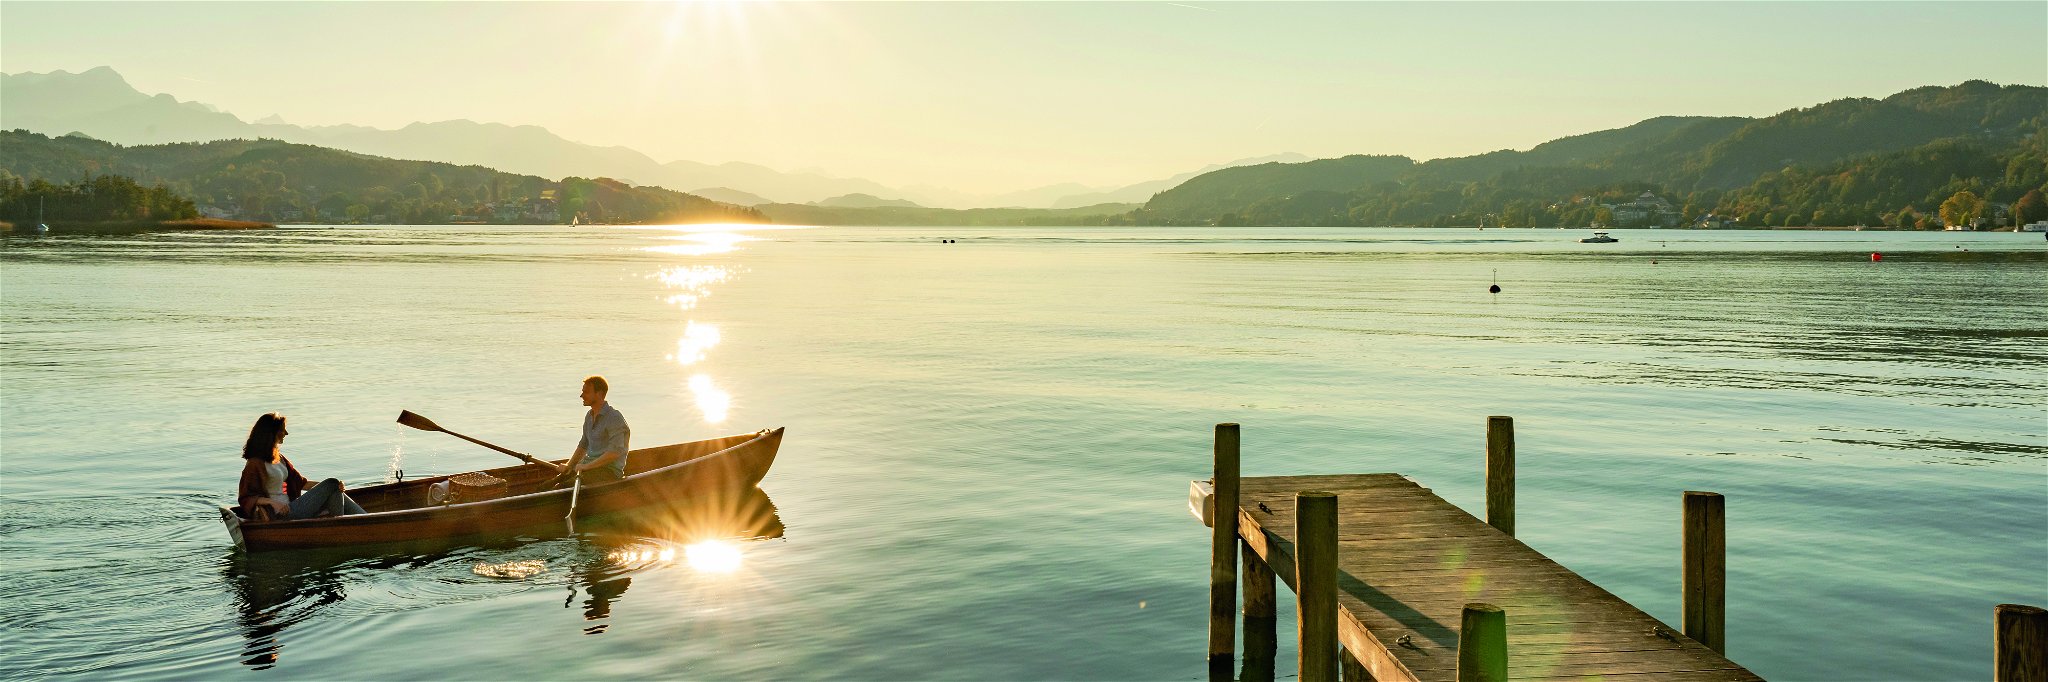 Entspannen, abschalten, loslassen, die Magie des Wasser auf sich wirken lassen – die Kärntner Seen bieten dafür eine perfekte Kulisse.